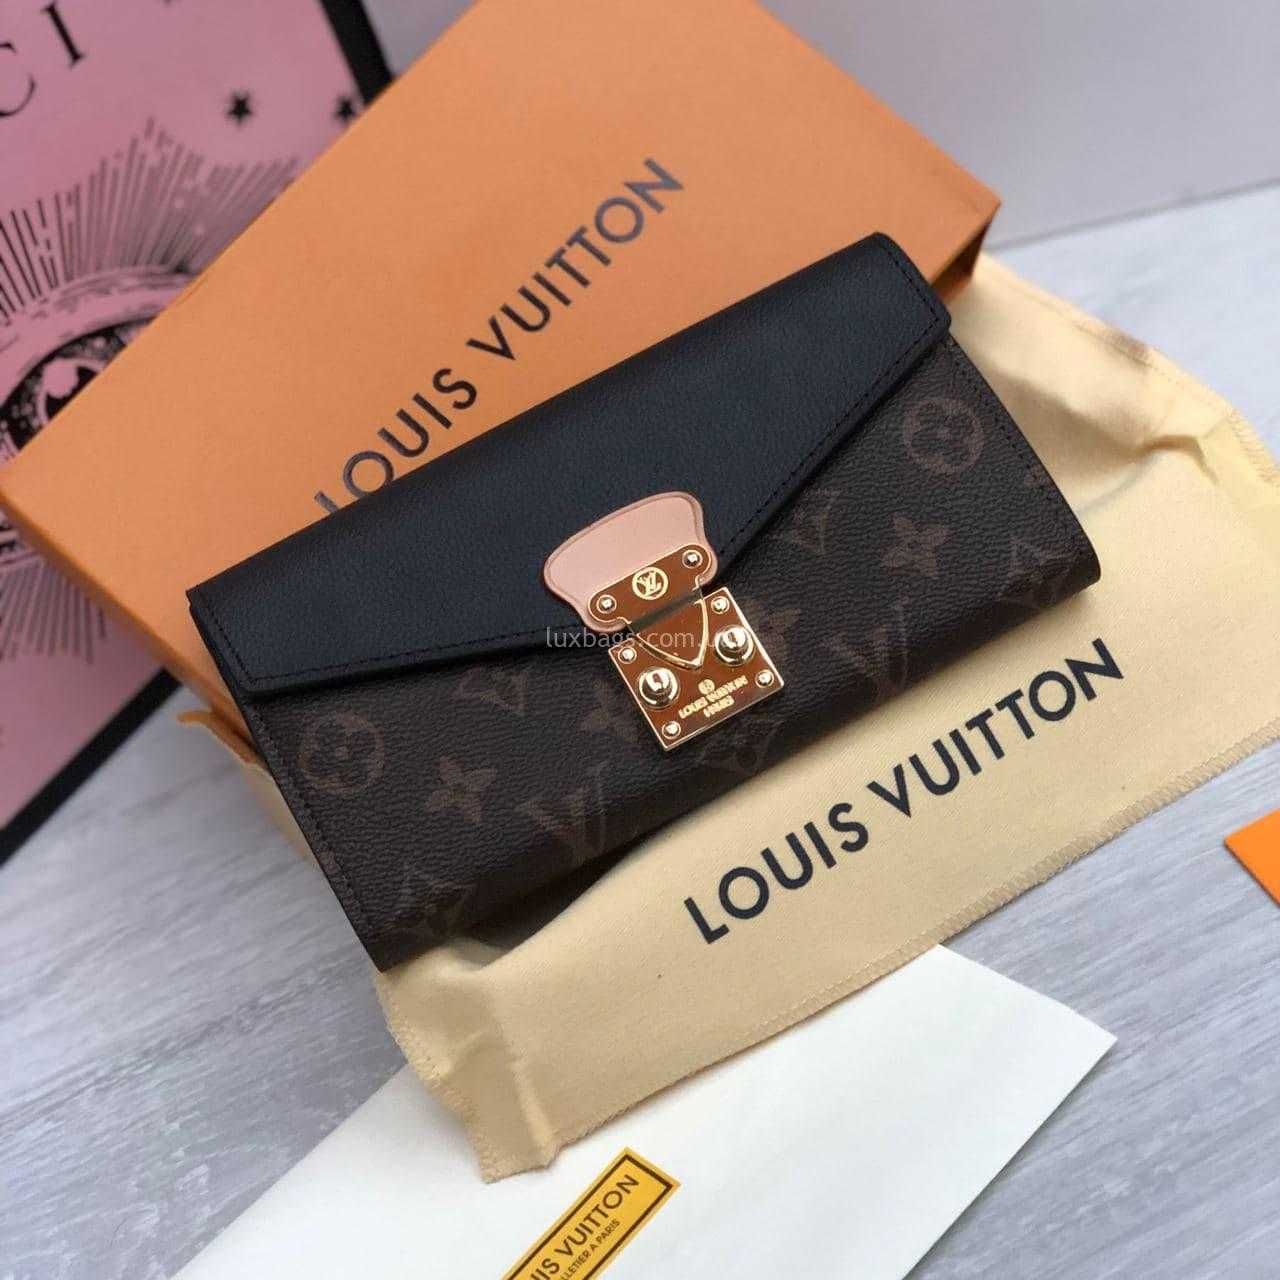 Стильный женский кошелёк Louis Vuitton